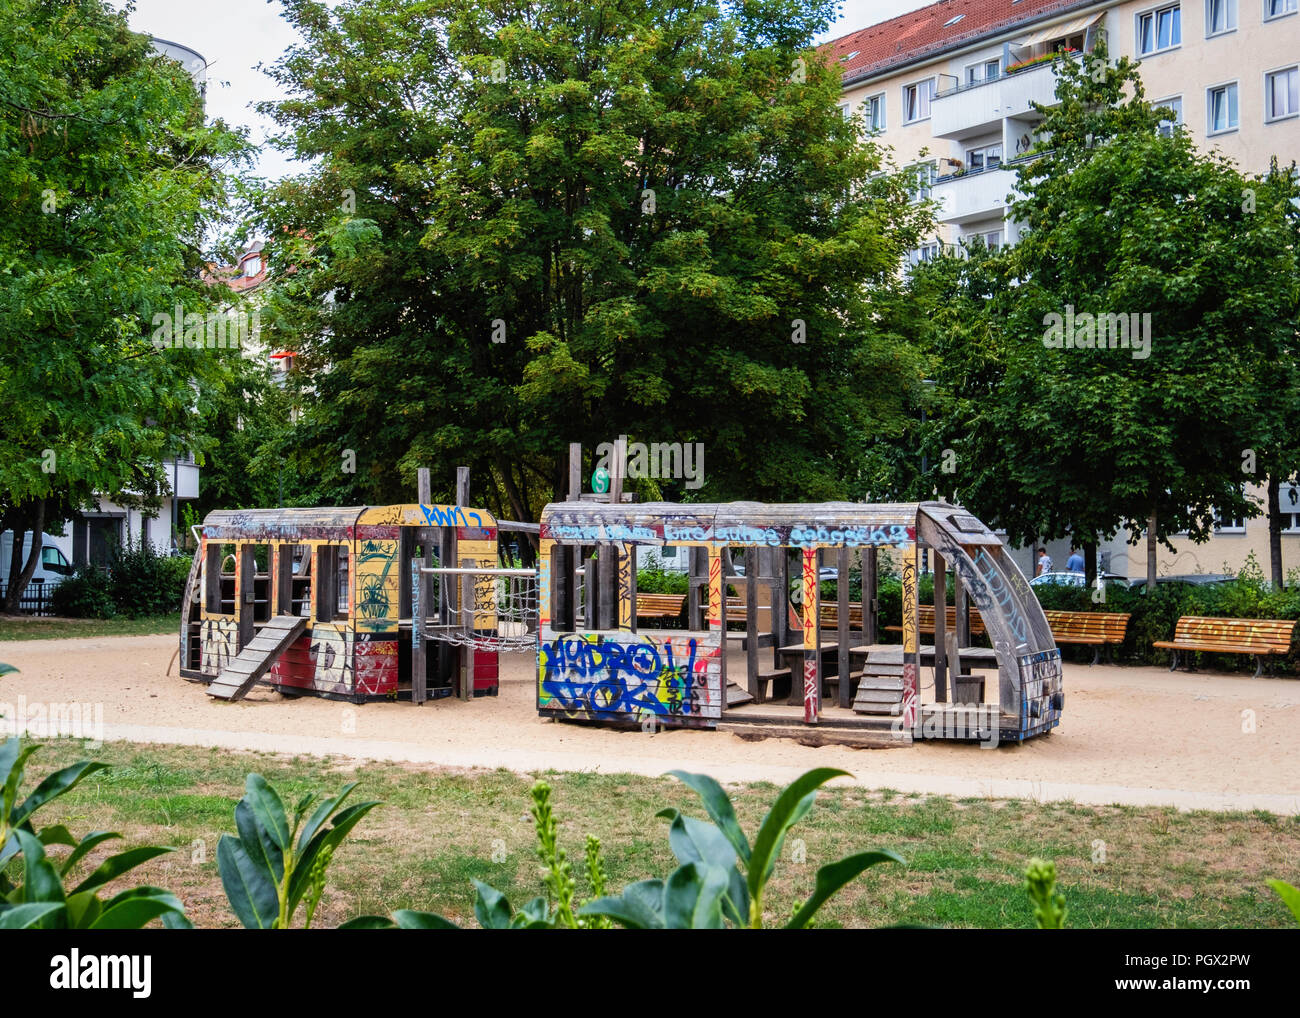 Friedrichshain-Berlin, S-bahn Spielplatz children's playground with wooden train Stock Photo